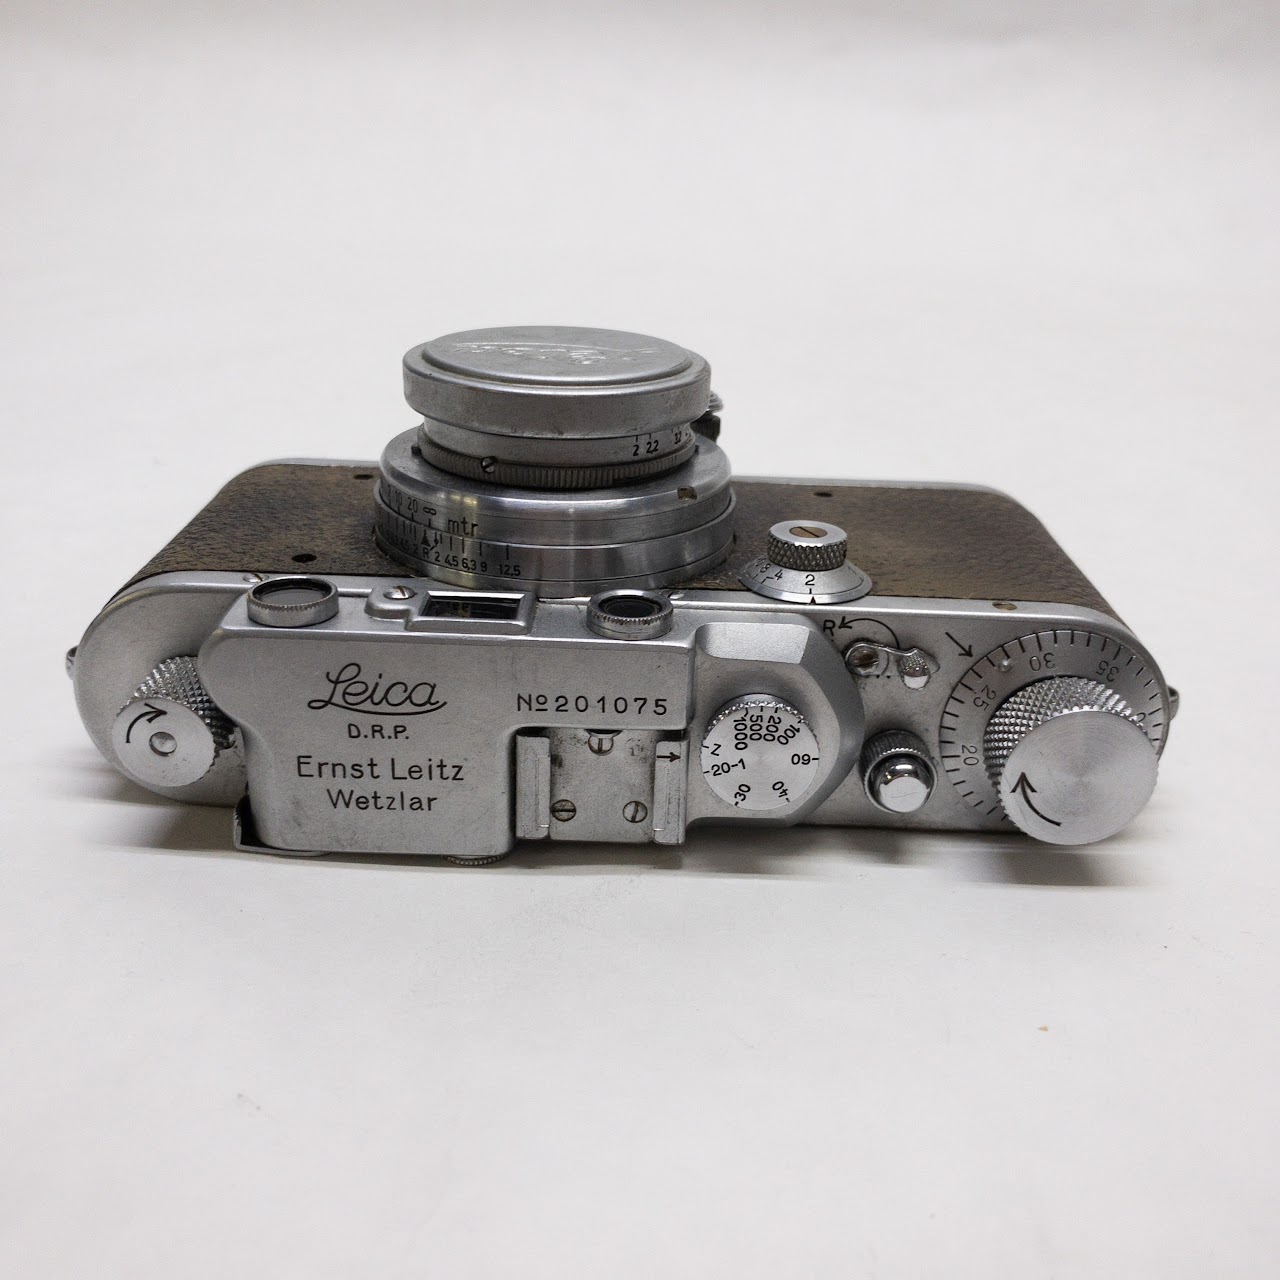 Leica DRP No. 201075 Camera with 5cm Summar Lense